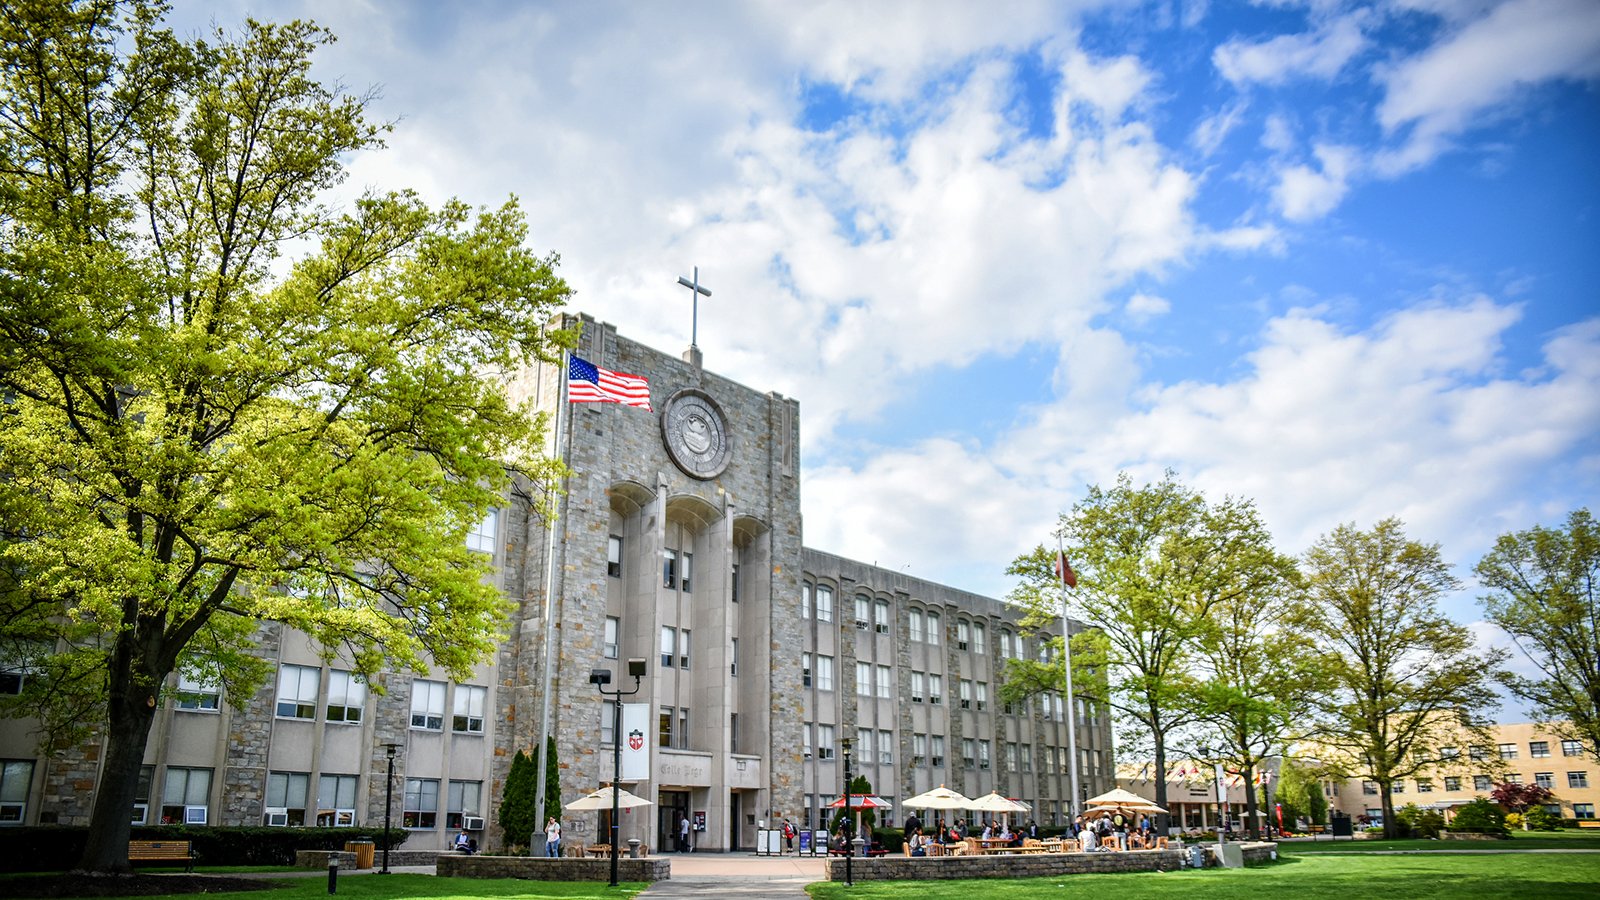 Saint John's University's